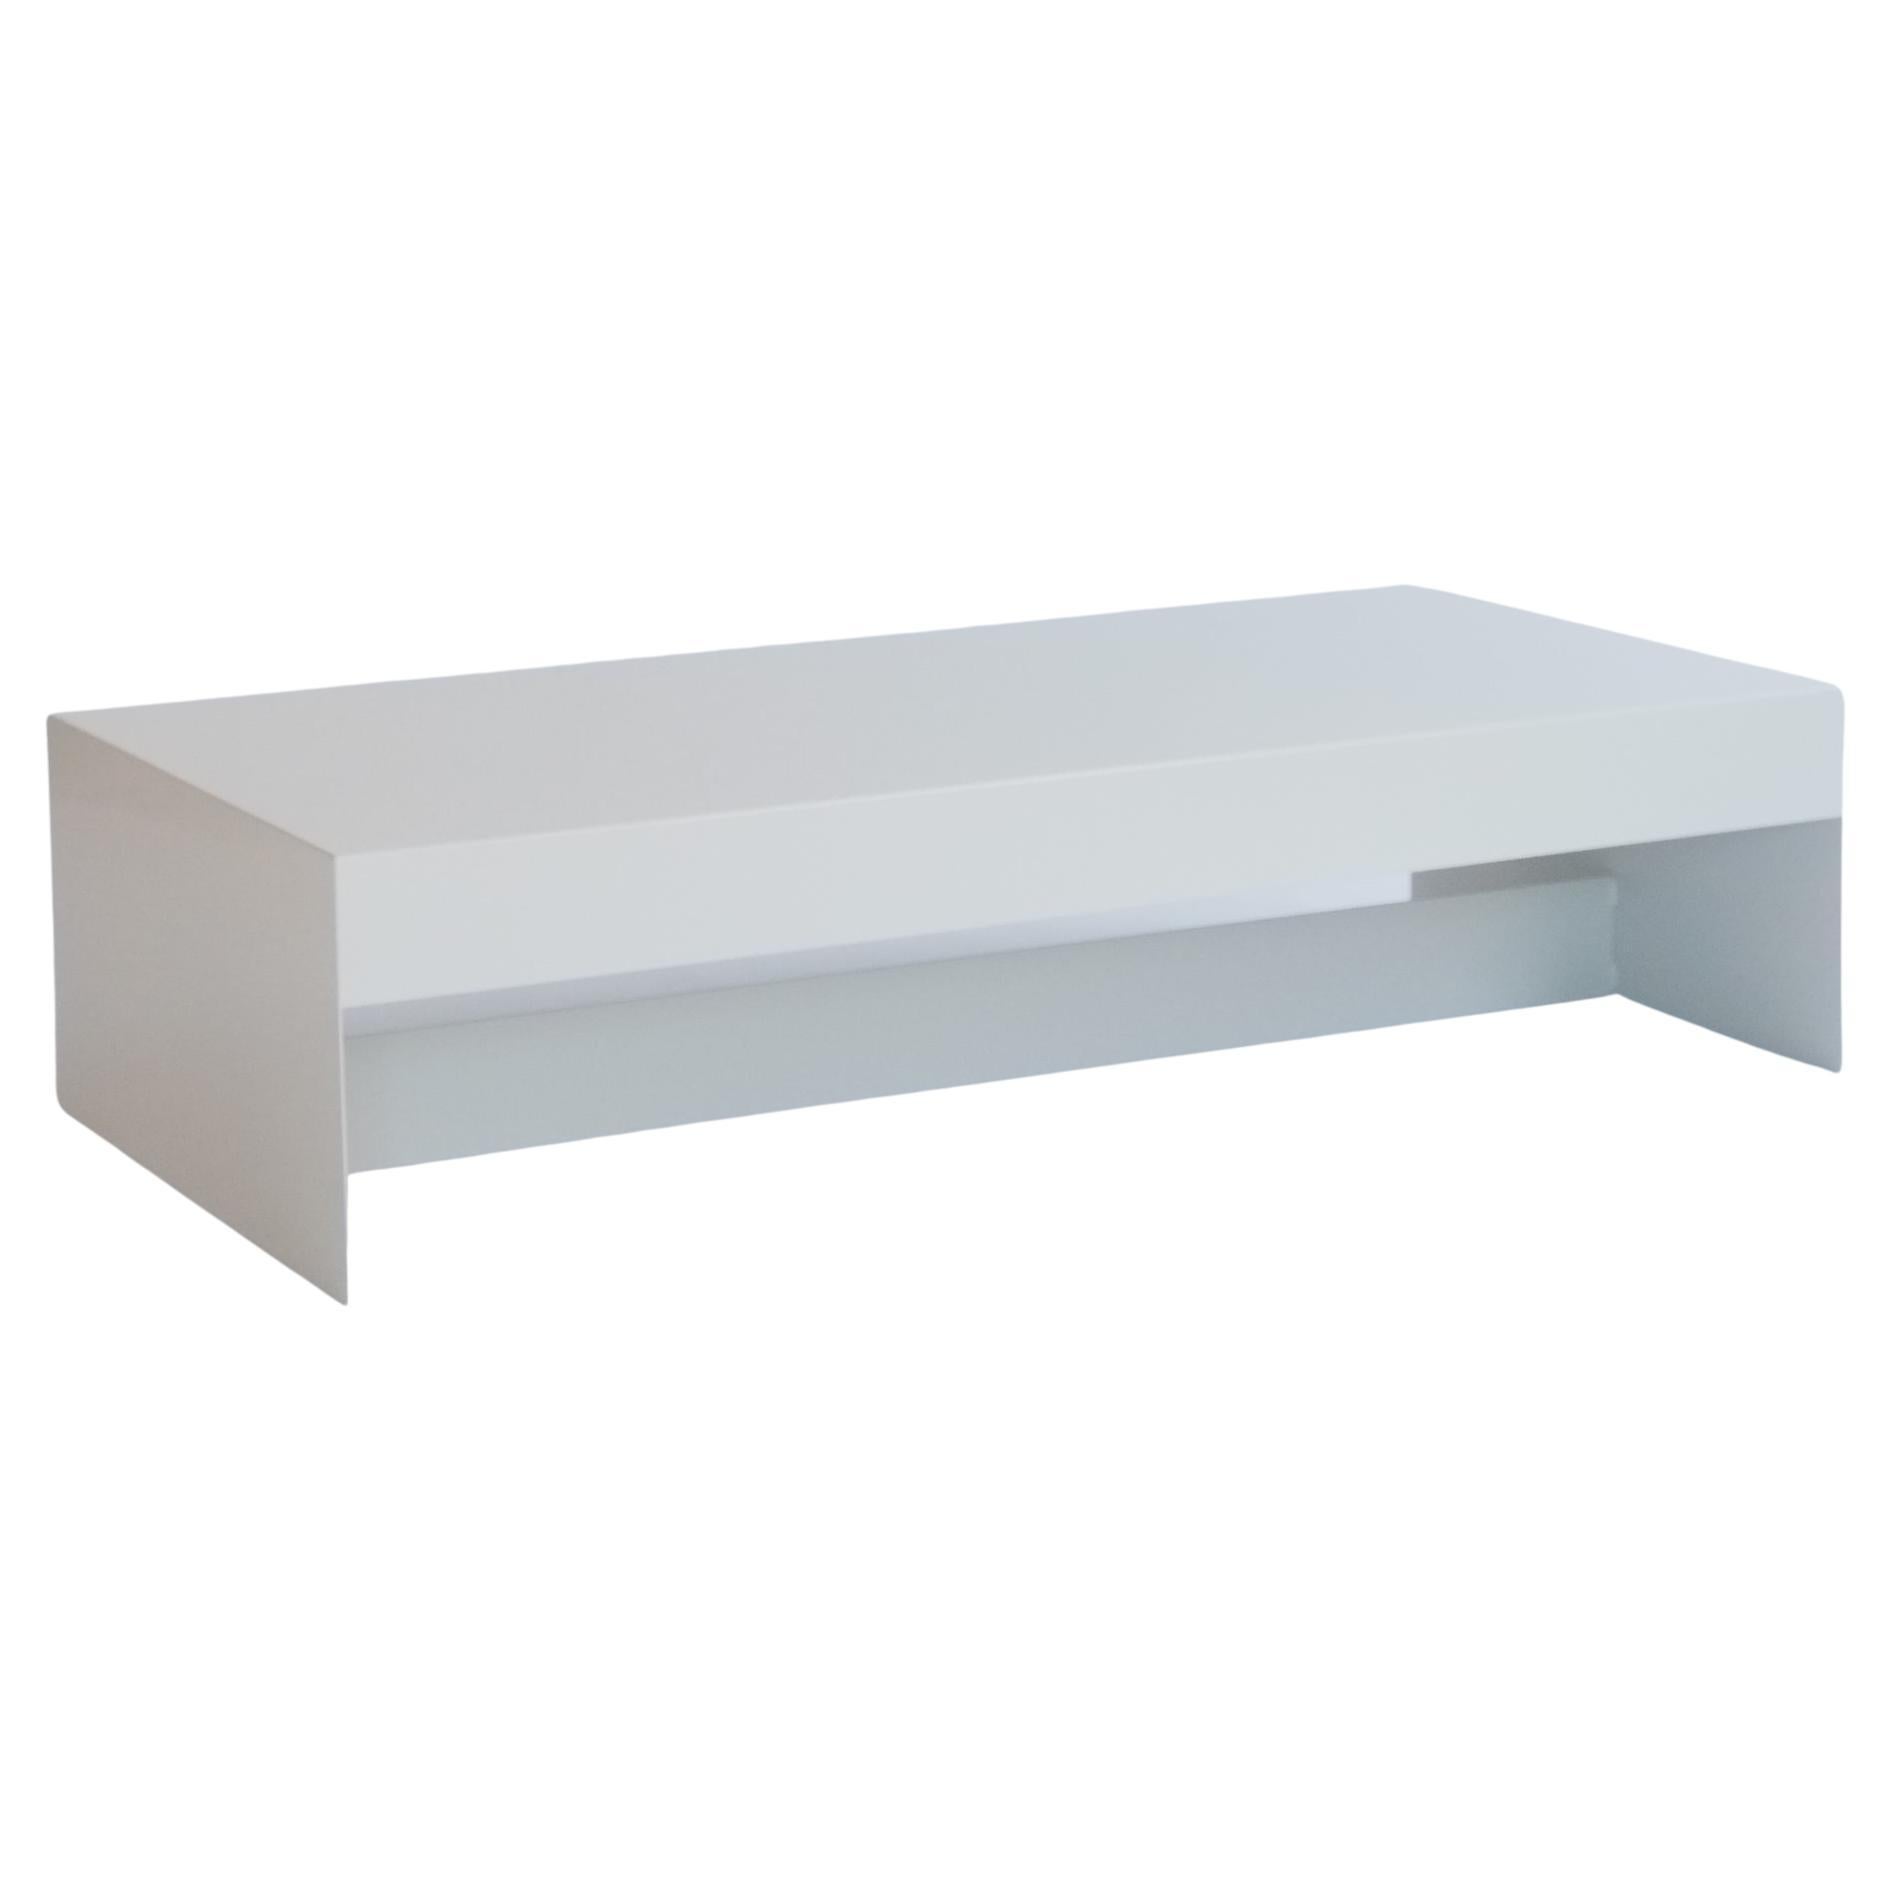 Table basse blanche en papier de forme simple en aluminium sur mesure, personnalisable en vente